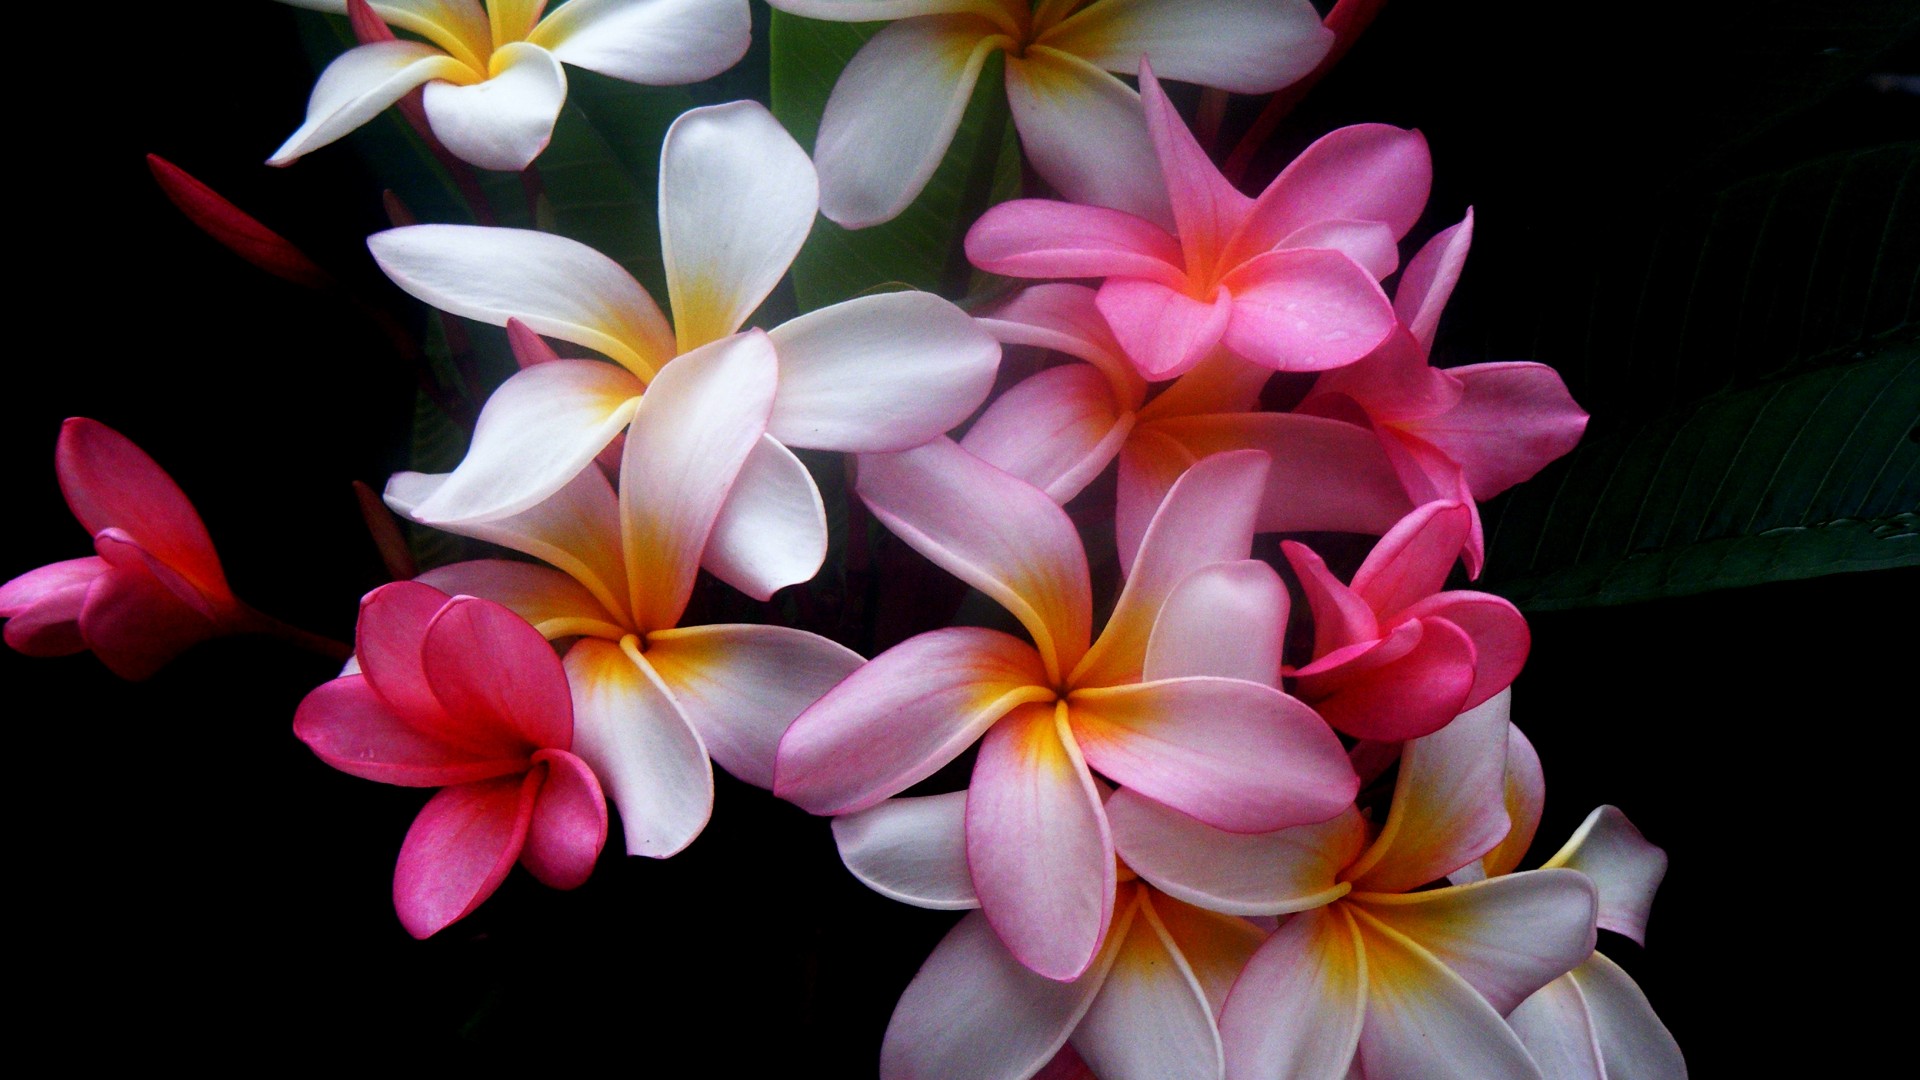 49+] Beautiful Flower Desktop Wallpaper - WallpaperSafari